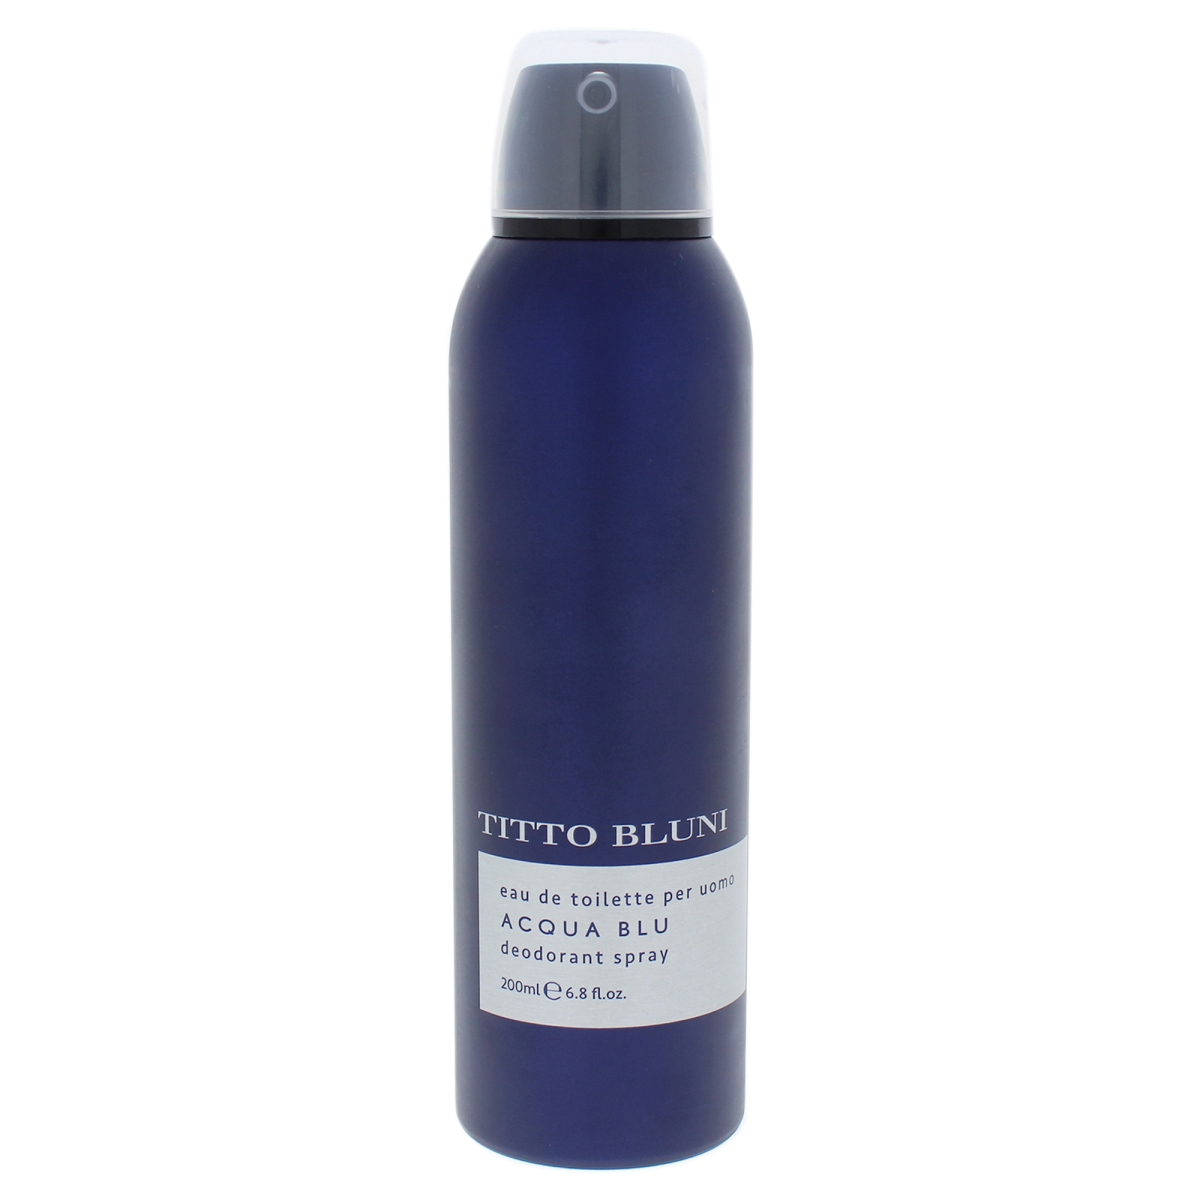 Picture of Titto Bluni I0085735 6.8 oz Acqua Blu Deodorant Spray for Men